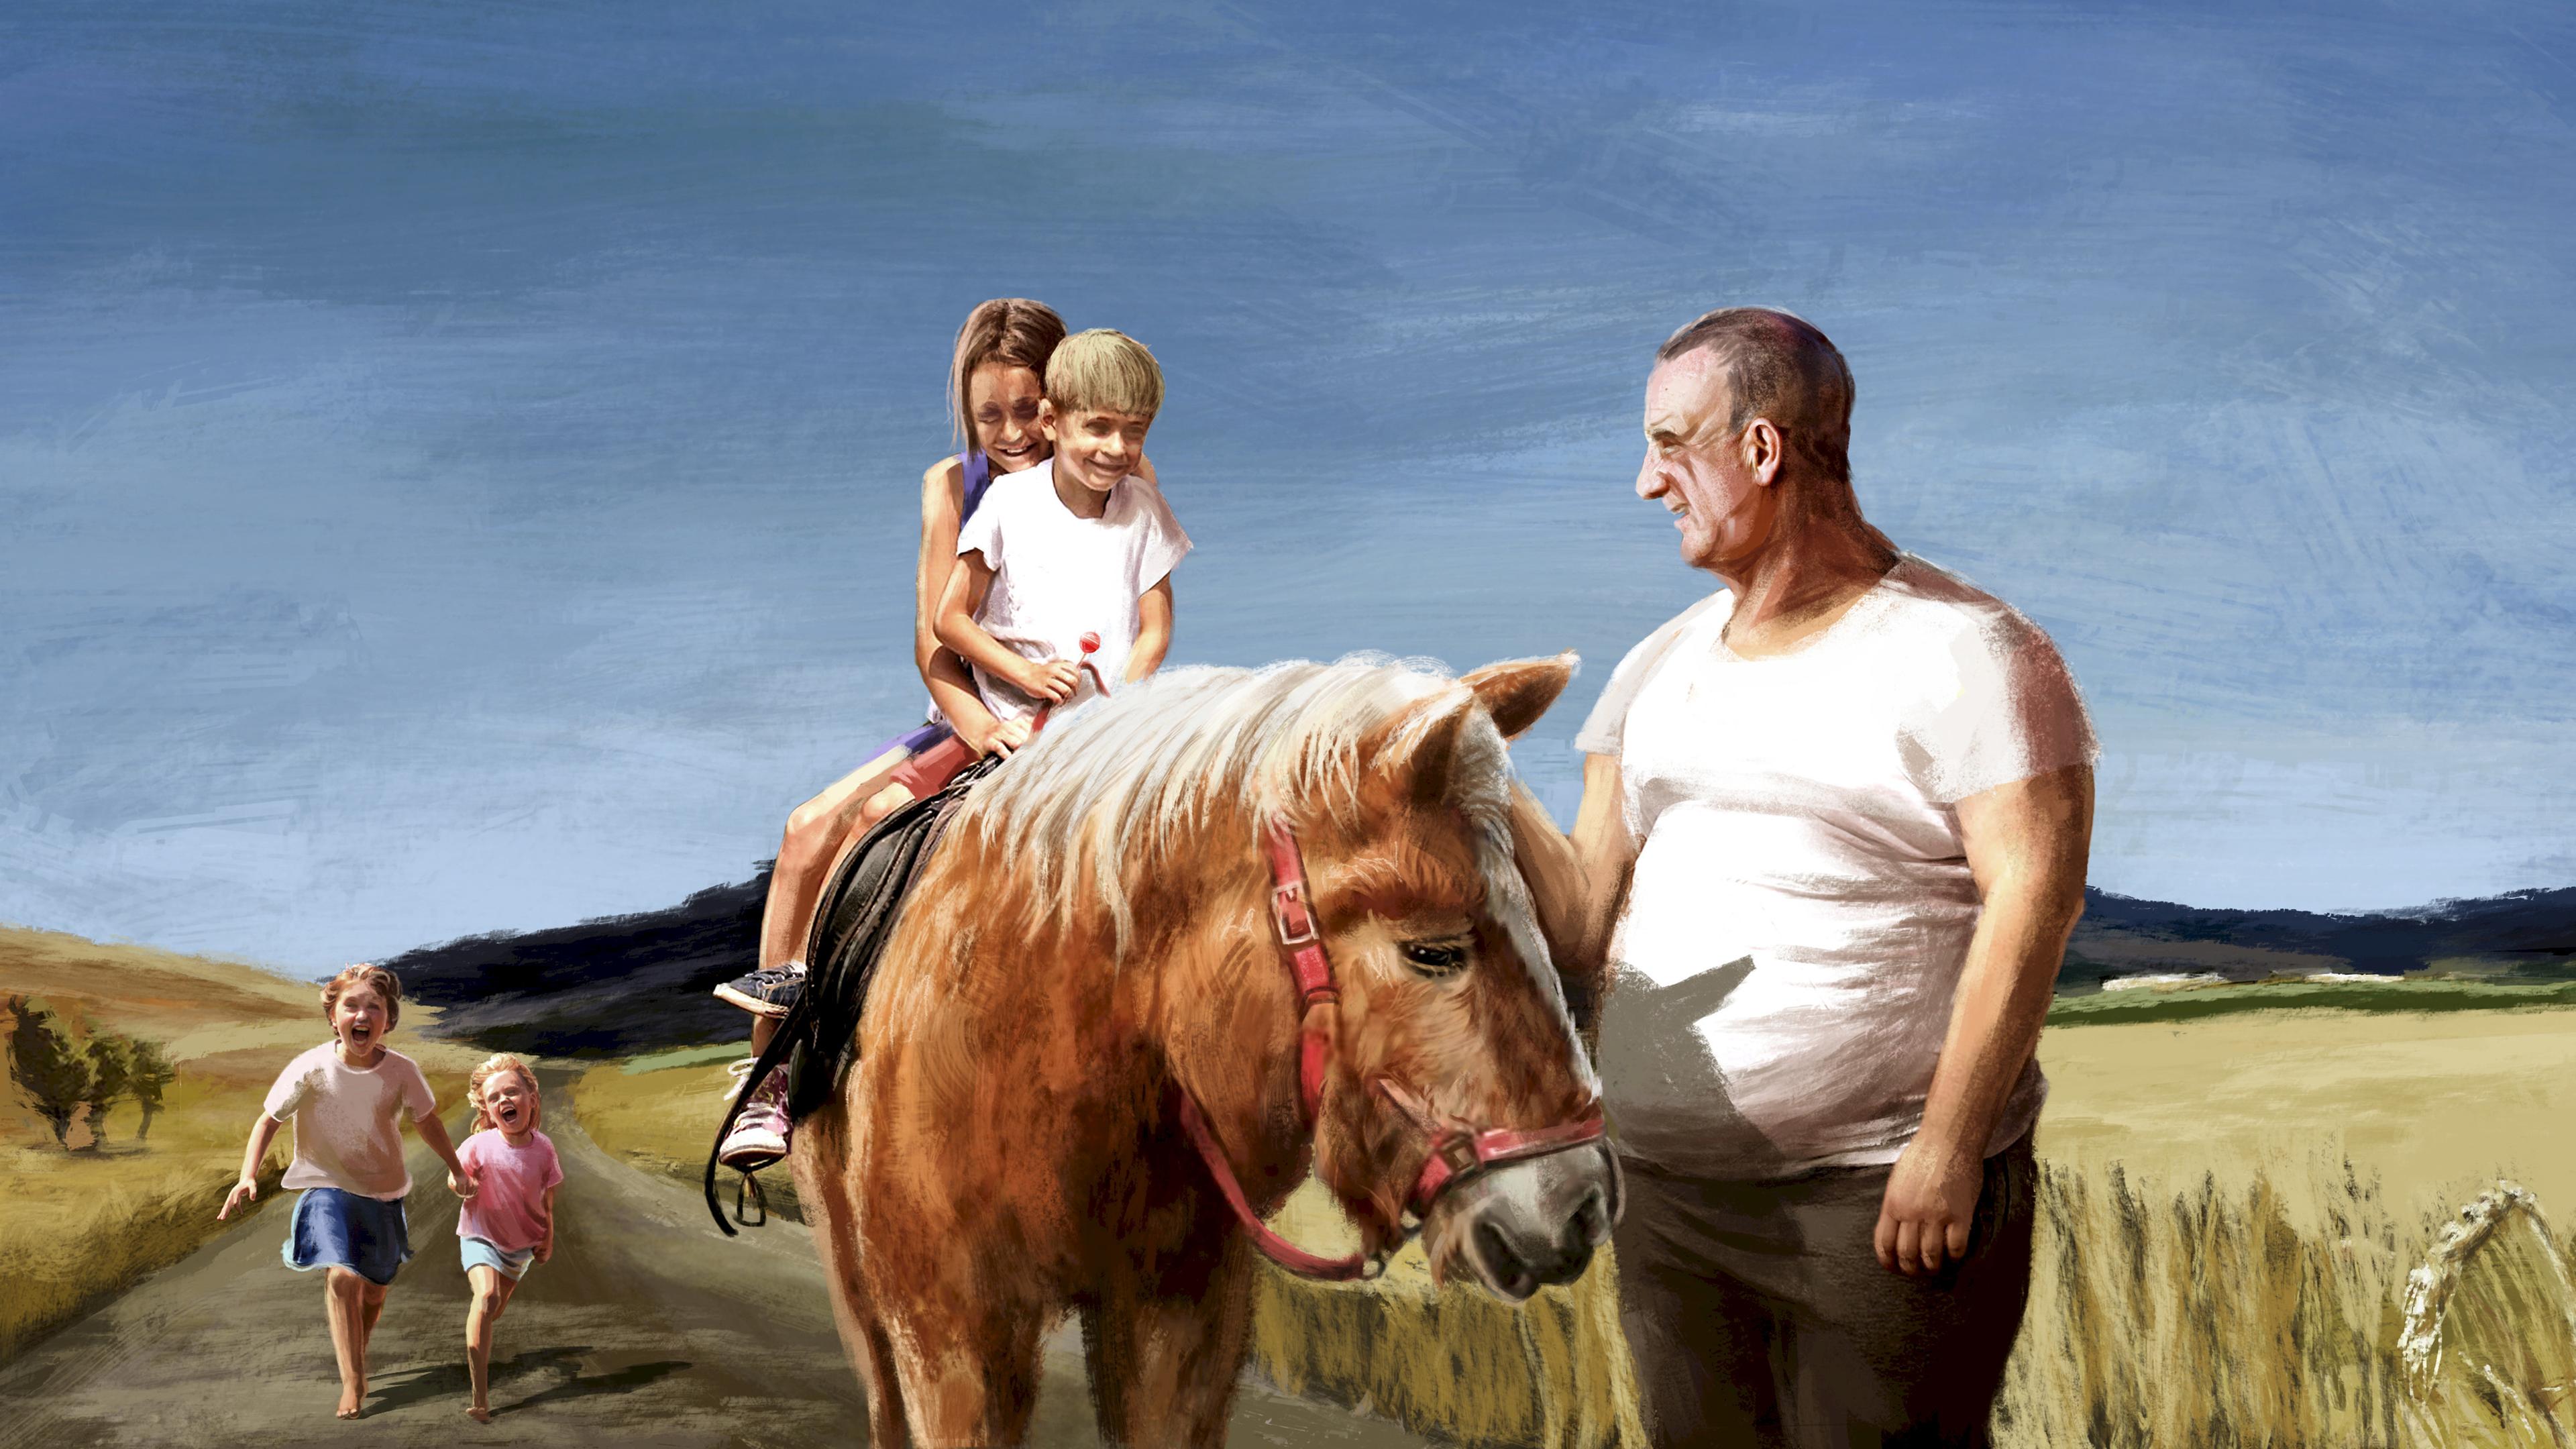 Zeichnung. Andreas V. steht neben einem Pferd und lächelt zwei Kindern zu, die auf dem Pferd sitzen. Im Hintergrund zwei weitere Kinder.